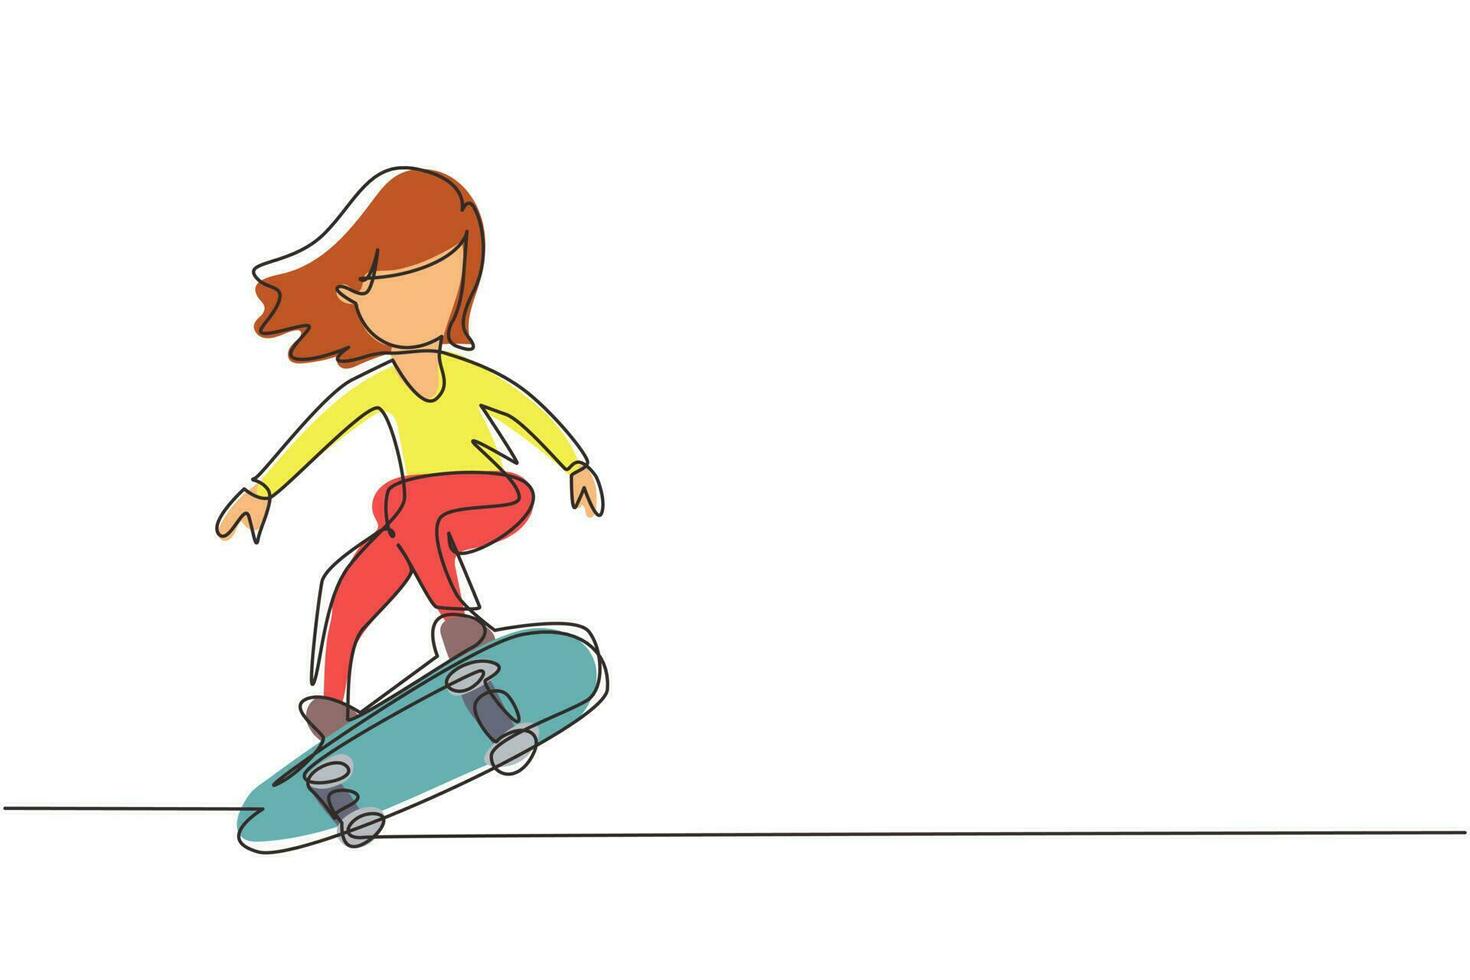 disegno a linea continua singola ragazza sorridente felice che gioca sullo skateboard. bambino che accelera facendo il salto. bambini su skateboard al parco giochi. illustrazione vettoriale di un disegno grafico a una linea